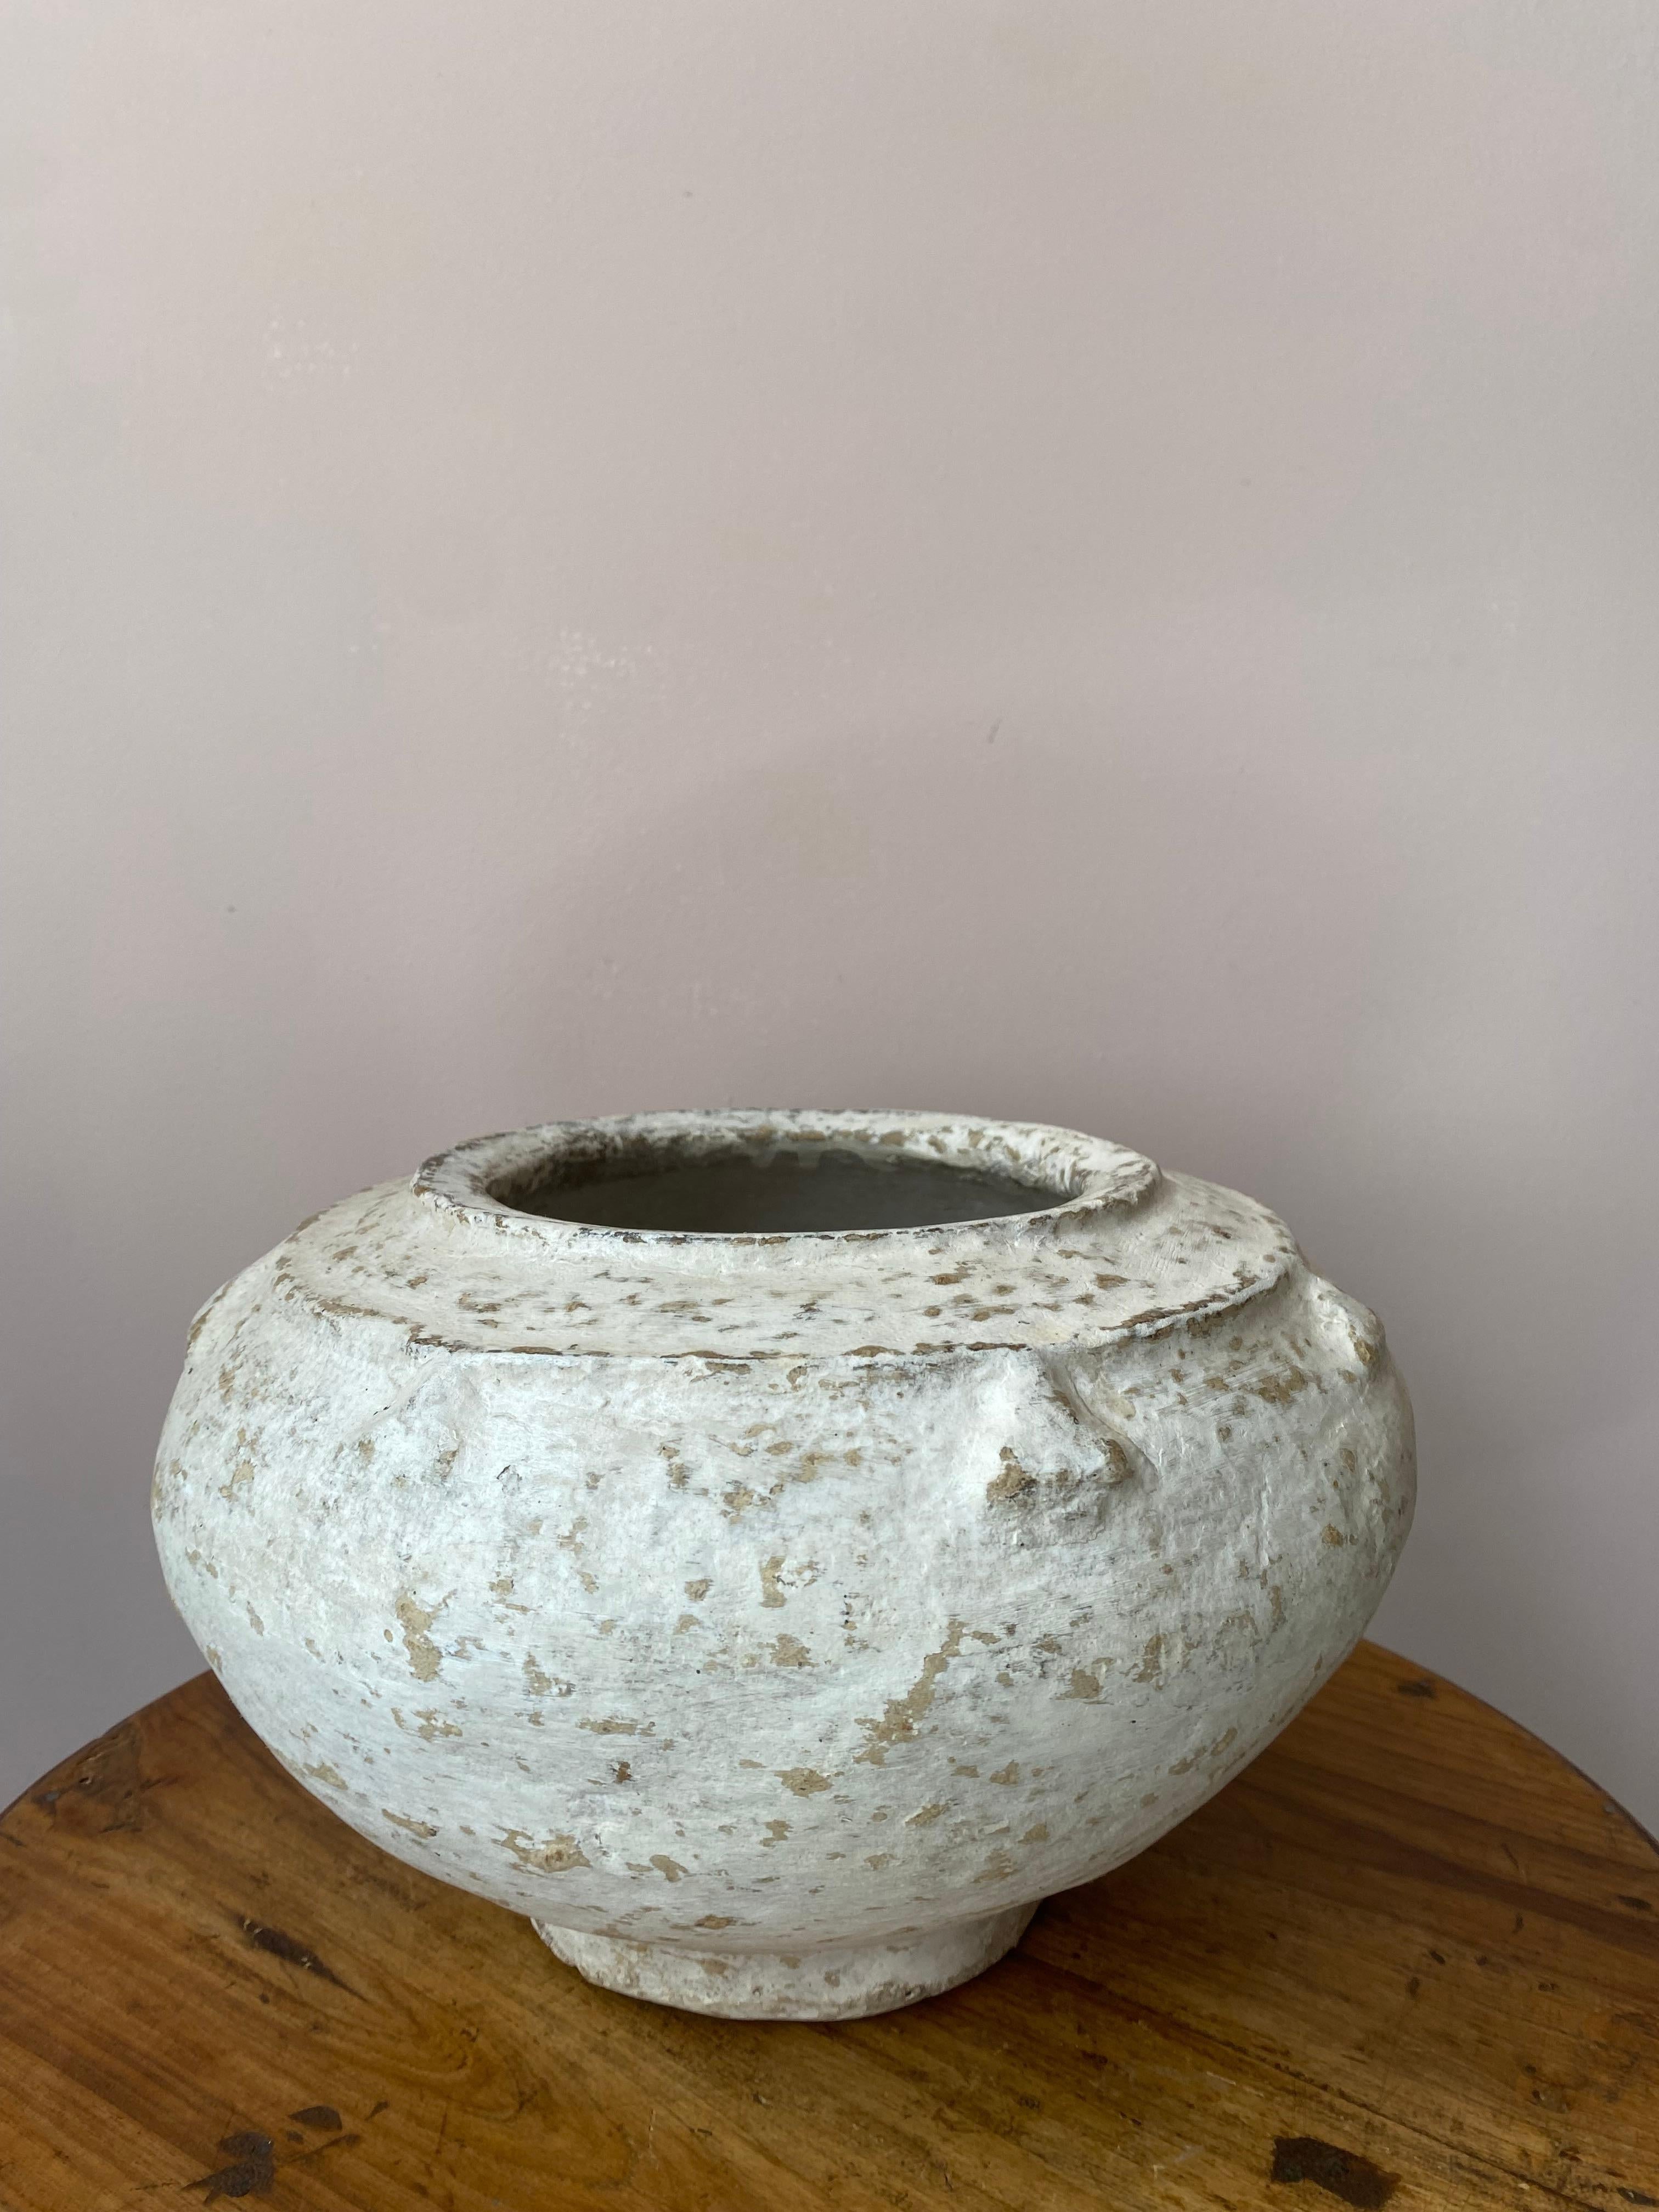 Diese Vintage-Vase aus Papier wurde in Rajasthan hergestellt, wo Papier zum ersten Mal für die Qualität der Isolierung verwendet wurde. 
Seine weiße Farbe macht ihn zu einem sehr dekorativen Gegenstand